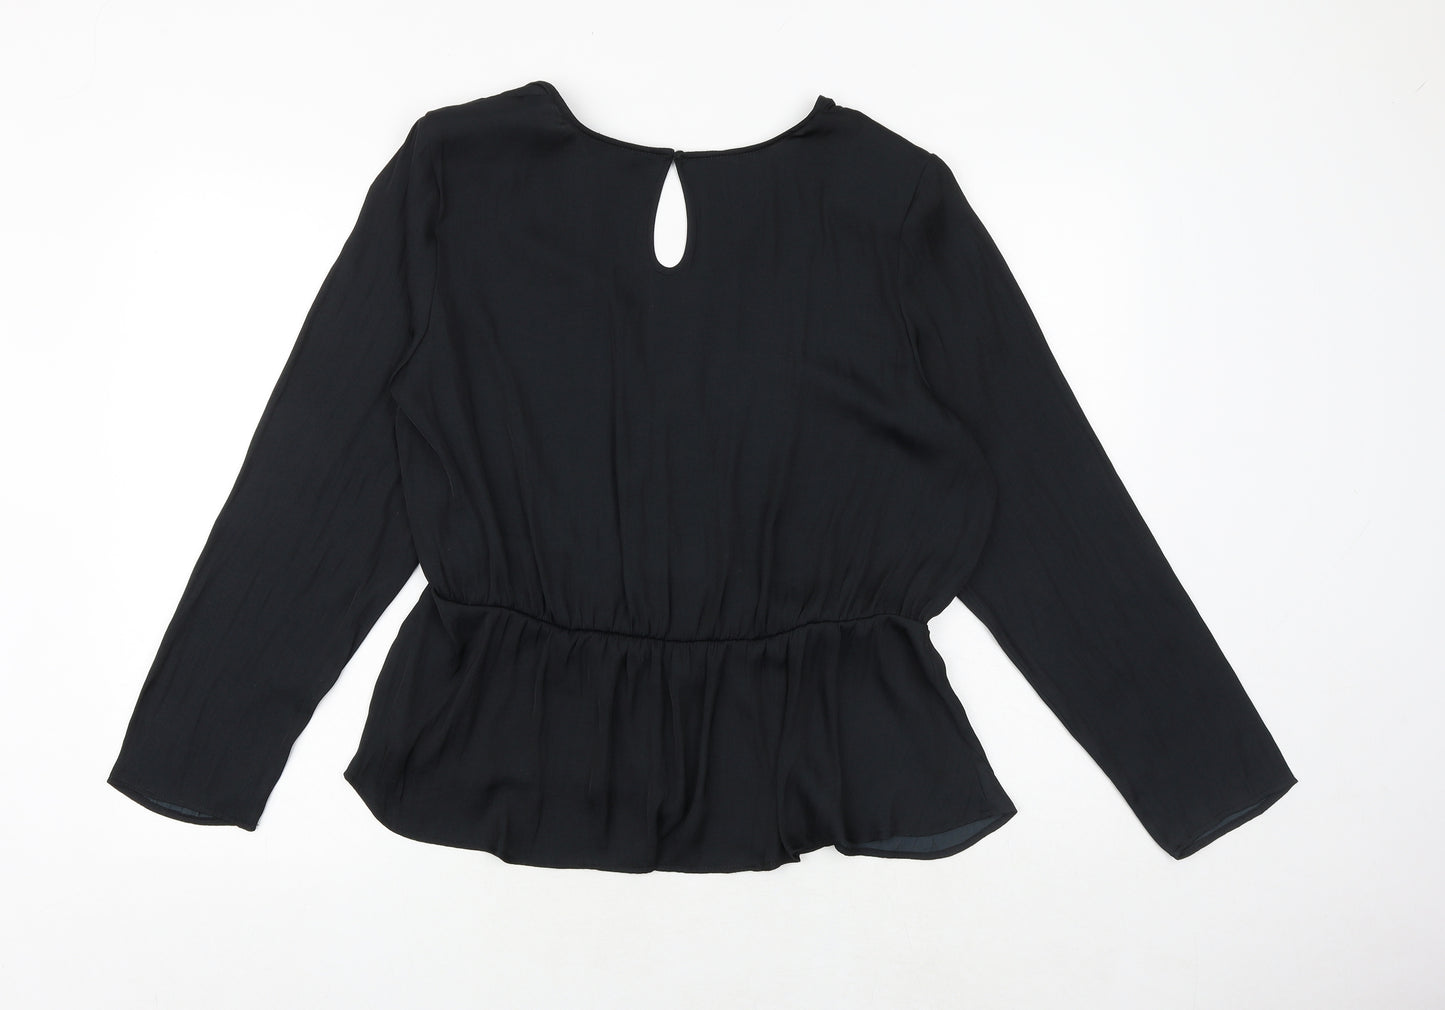 Marks and Spencer Womens Black Polyester Basic Blouse Size 18 V-Neck - Peplum